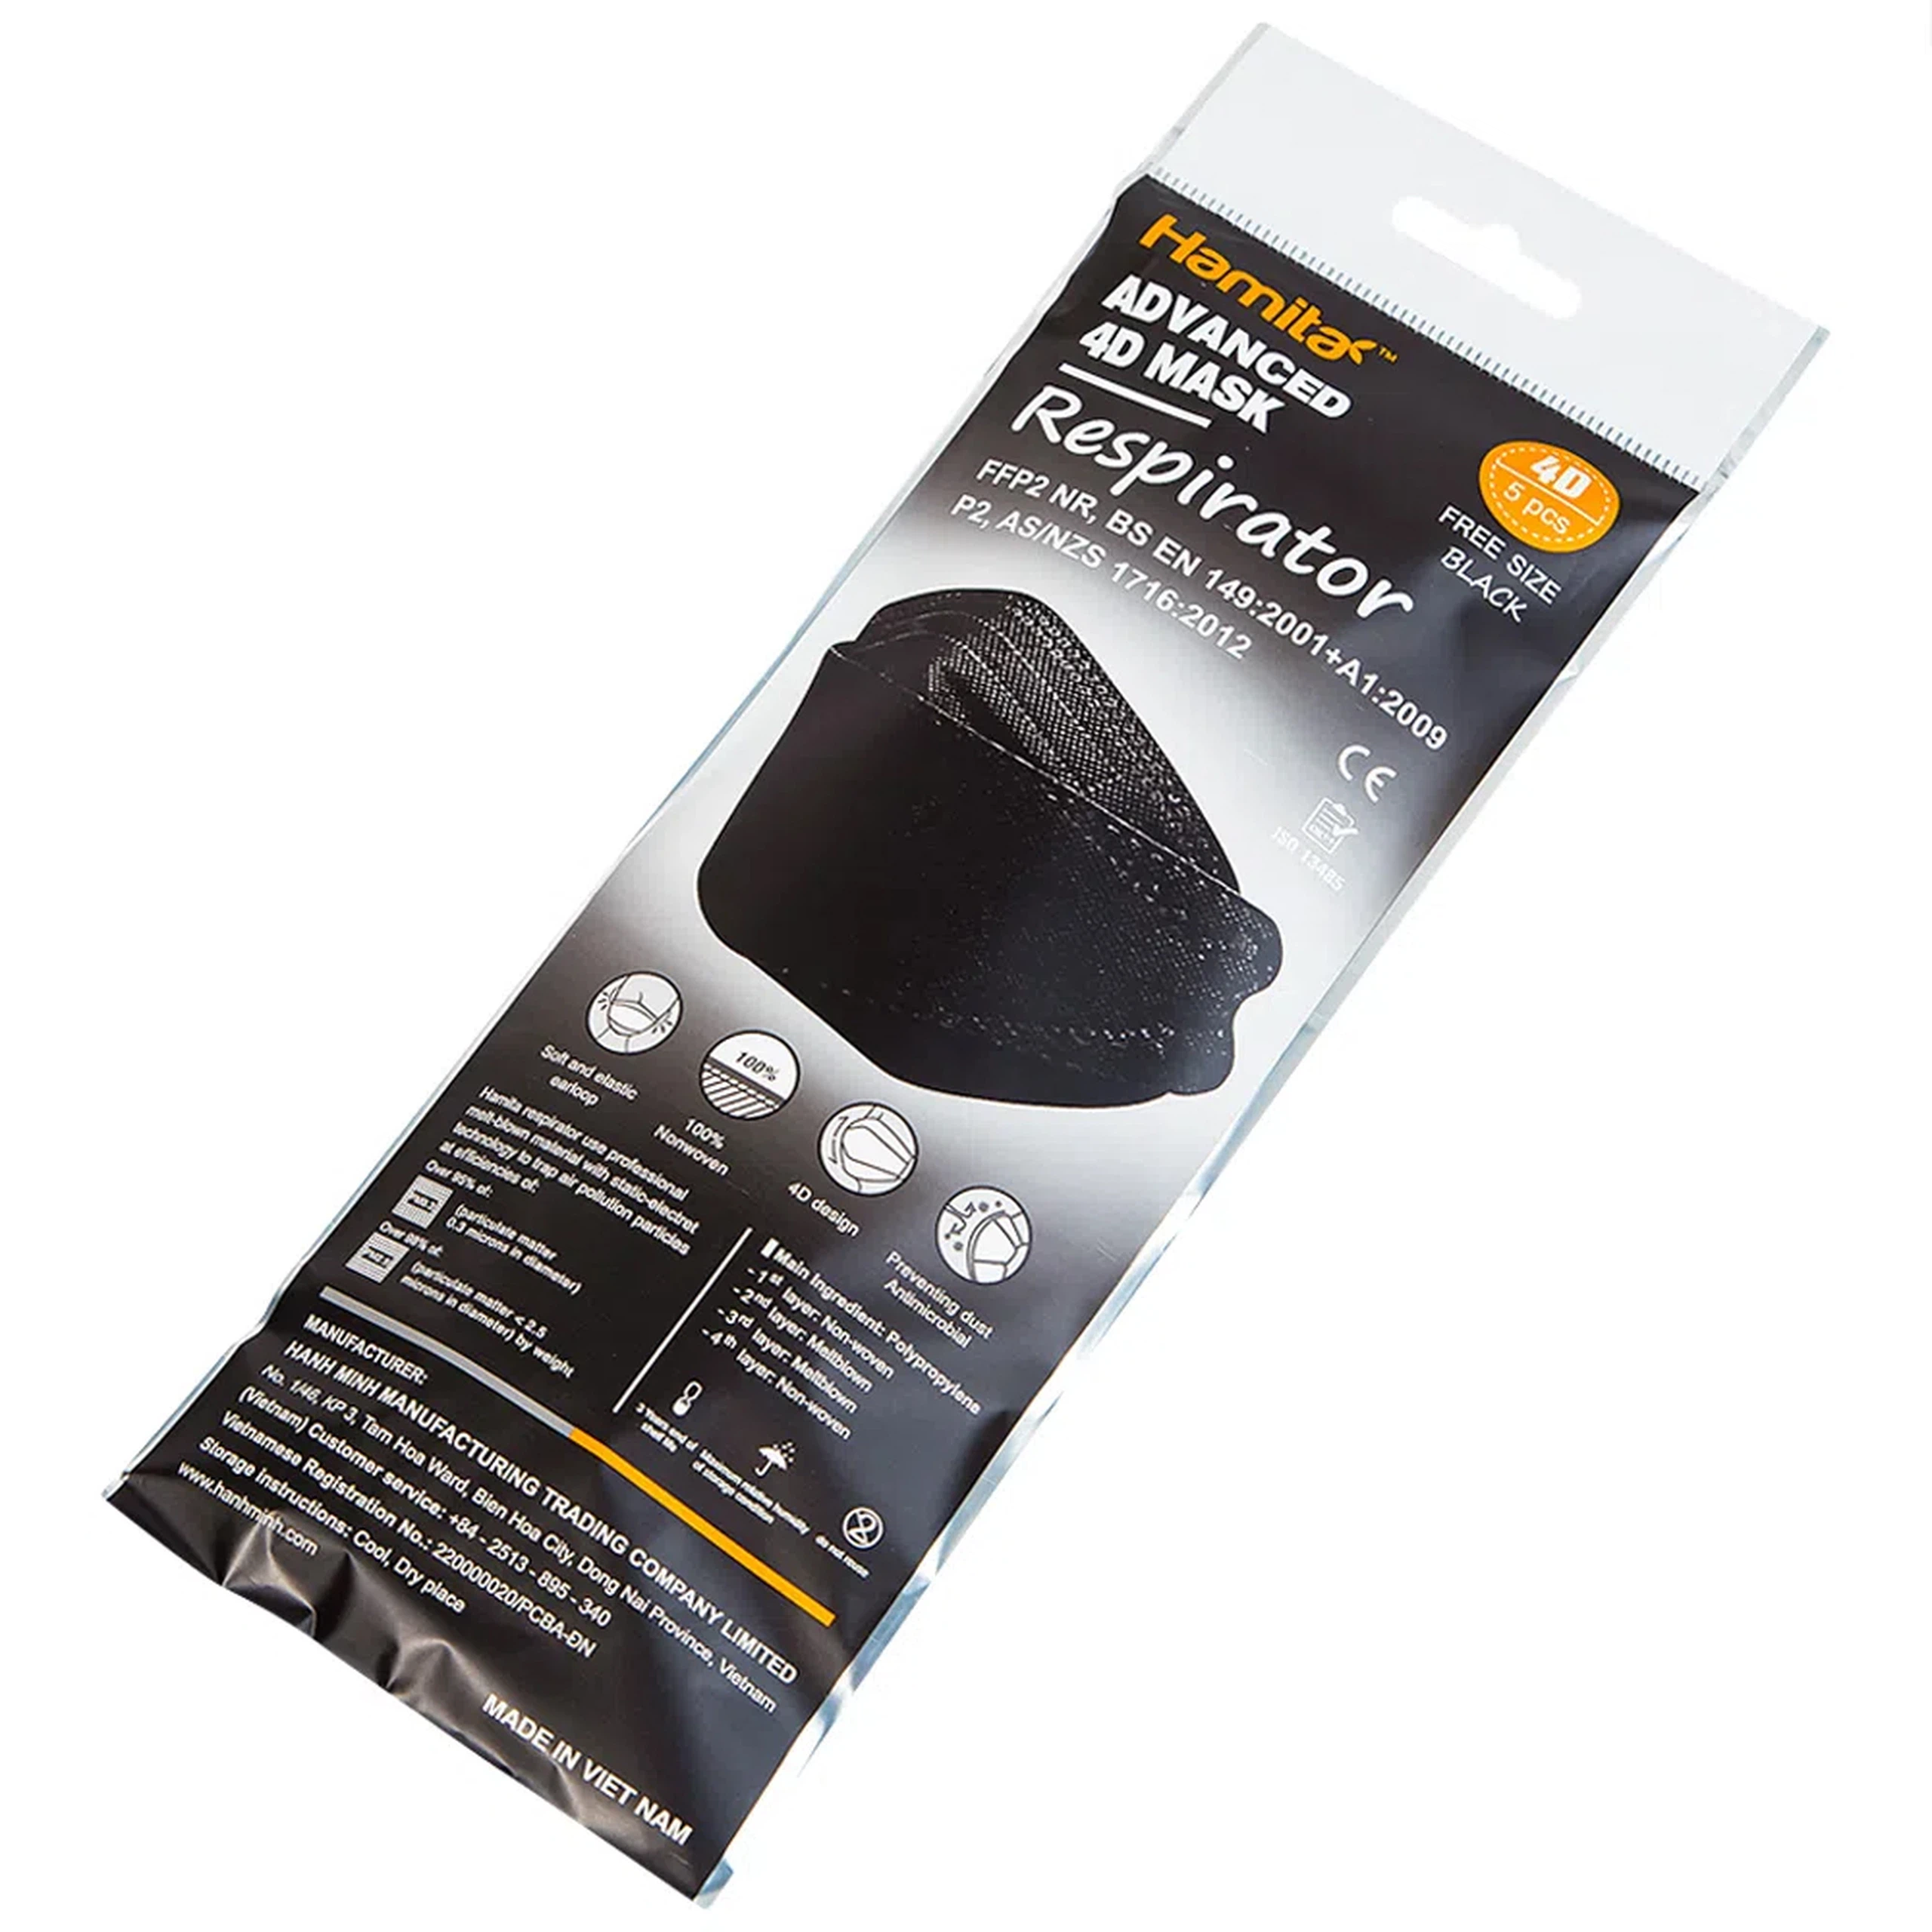 Khẩu trang y tế Hamita Advanced 4D Mask màu đen hỗ trợ ngăn khói, bụi, kháng khuẩn (5 cái)